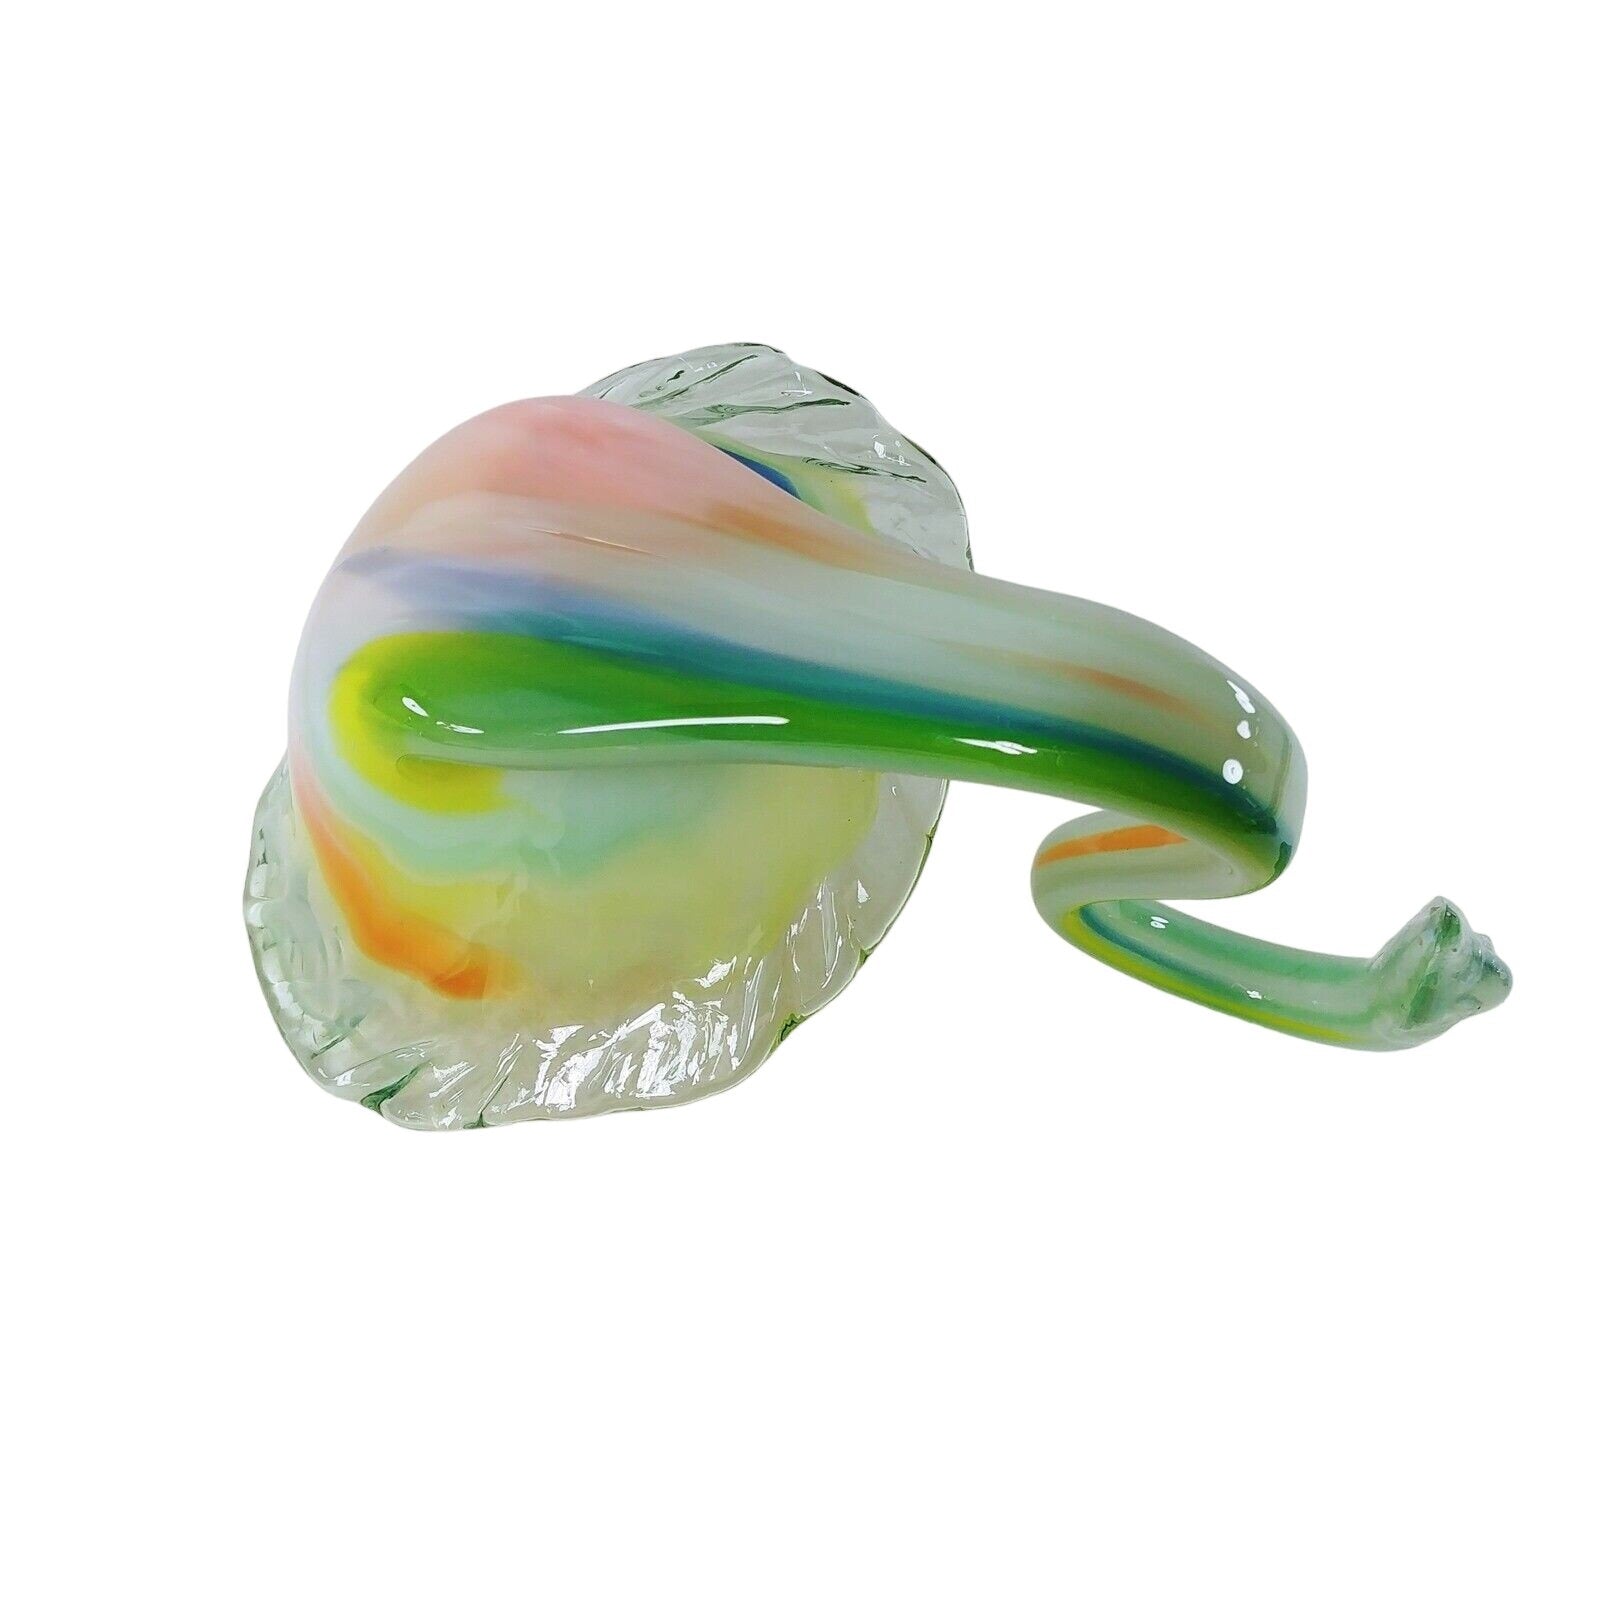 Art Glass Swan Hand Blown Bowl Floral Candy Dish Centerpiece Artisan Made